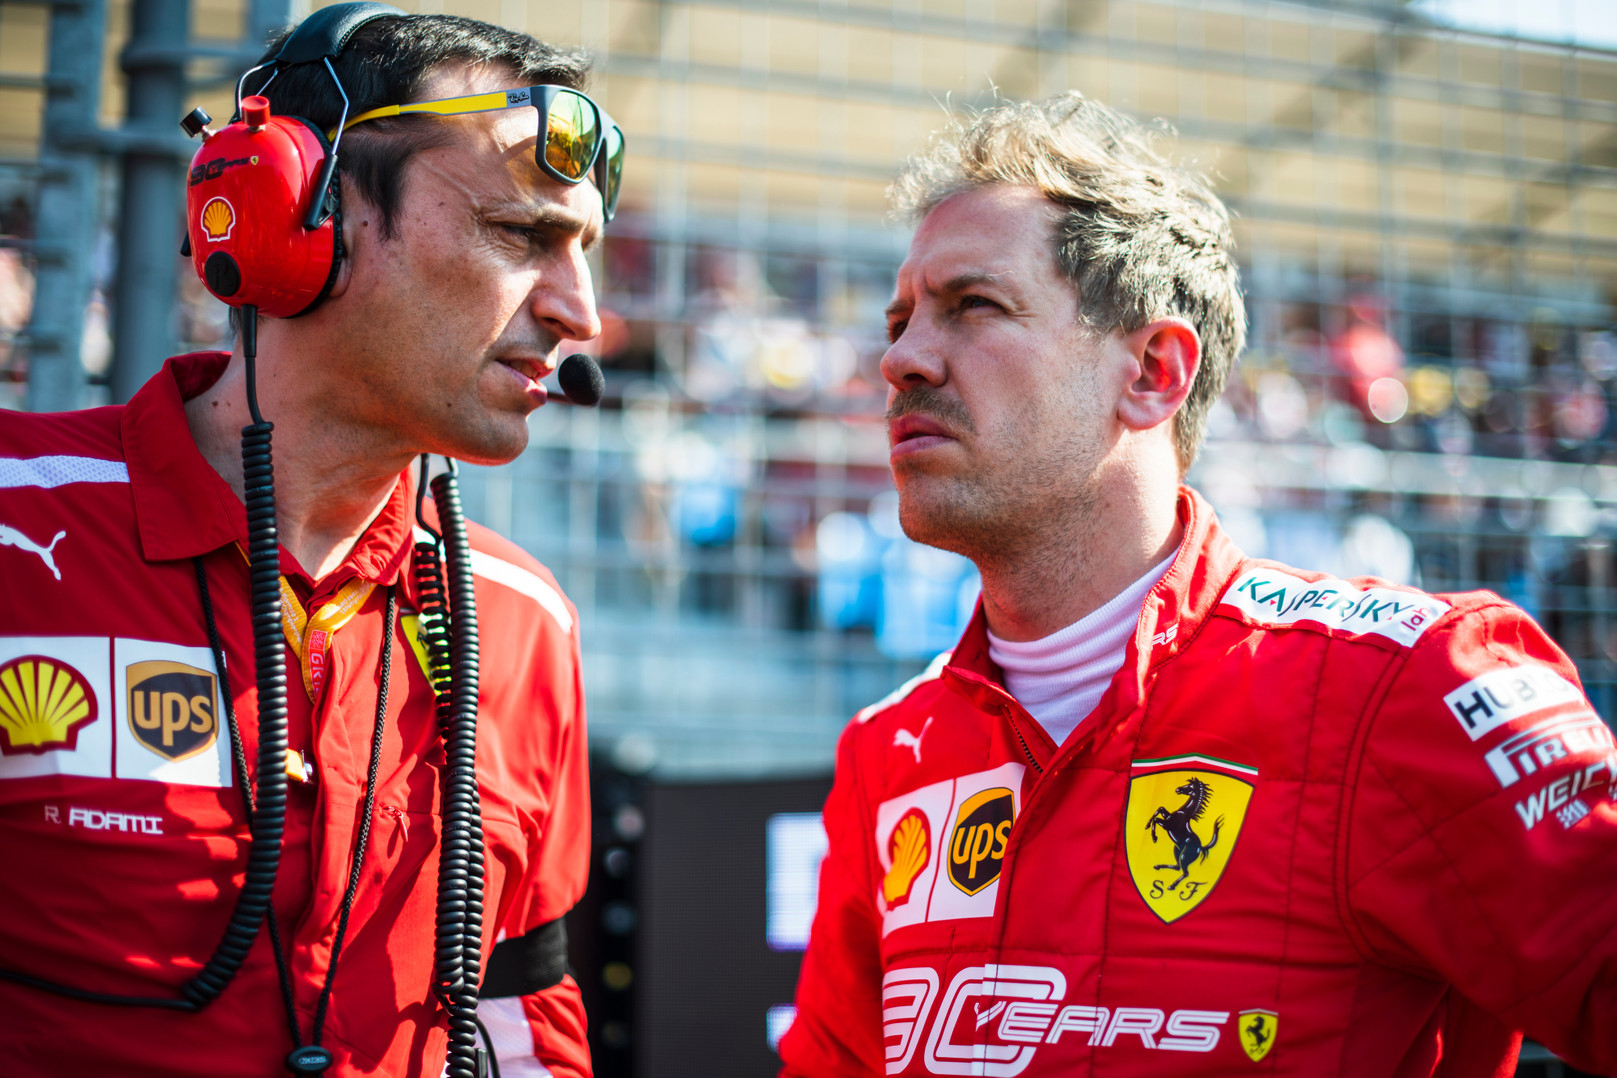 Italijos žiniasklaida siūlo S. Vetteliui susirasti psichologą ir nusiskusti ūsus